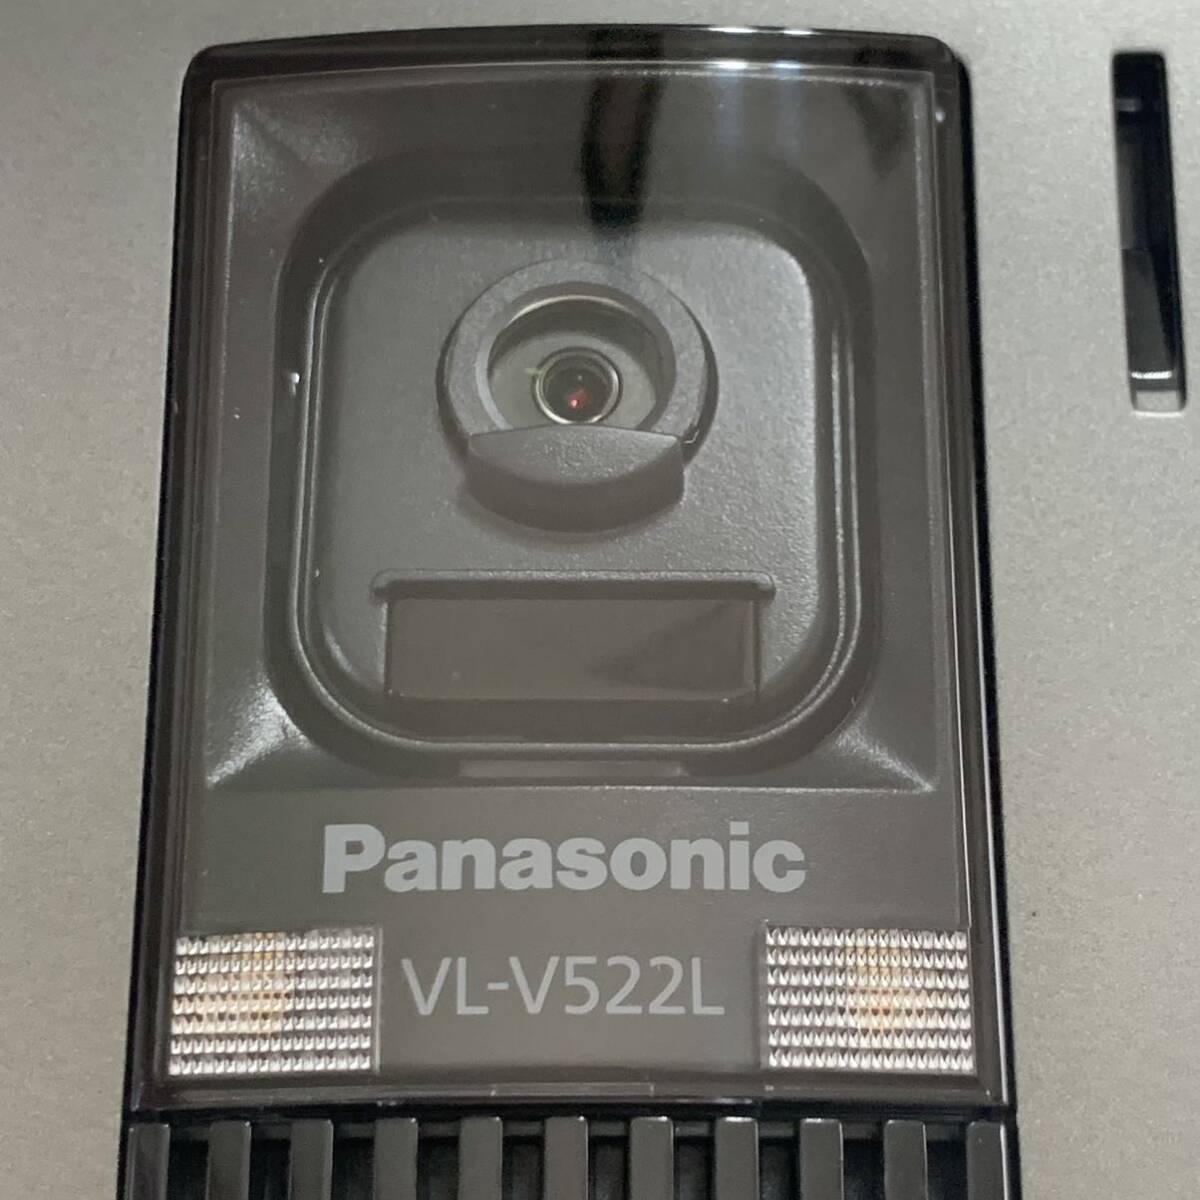 超美品 VL-V522L-S パナソニック パナソニックドアホン 玄関子機 Panasonic インターホン カラーカメラ玄関子機_画像2